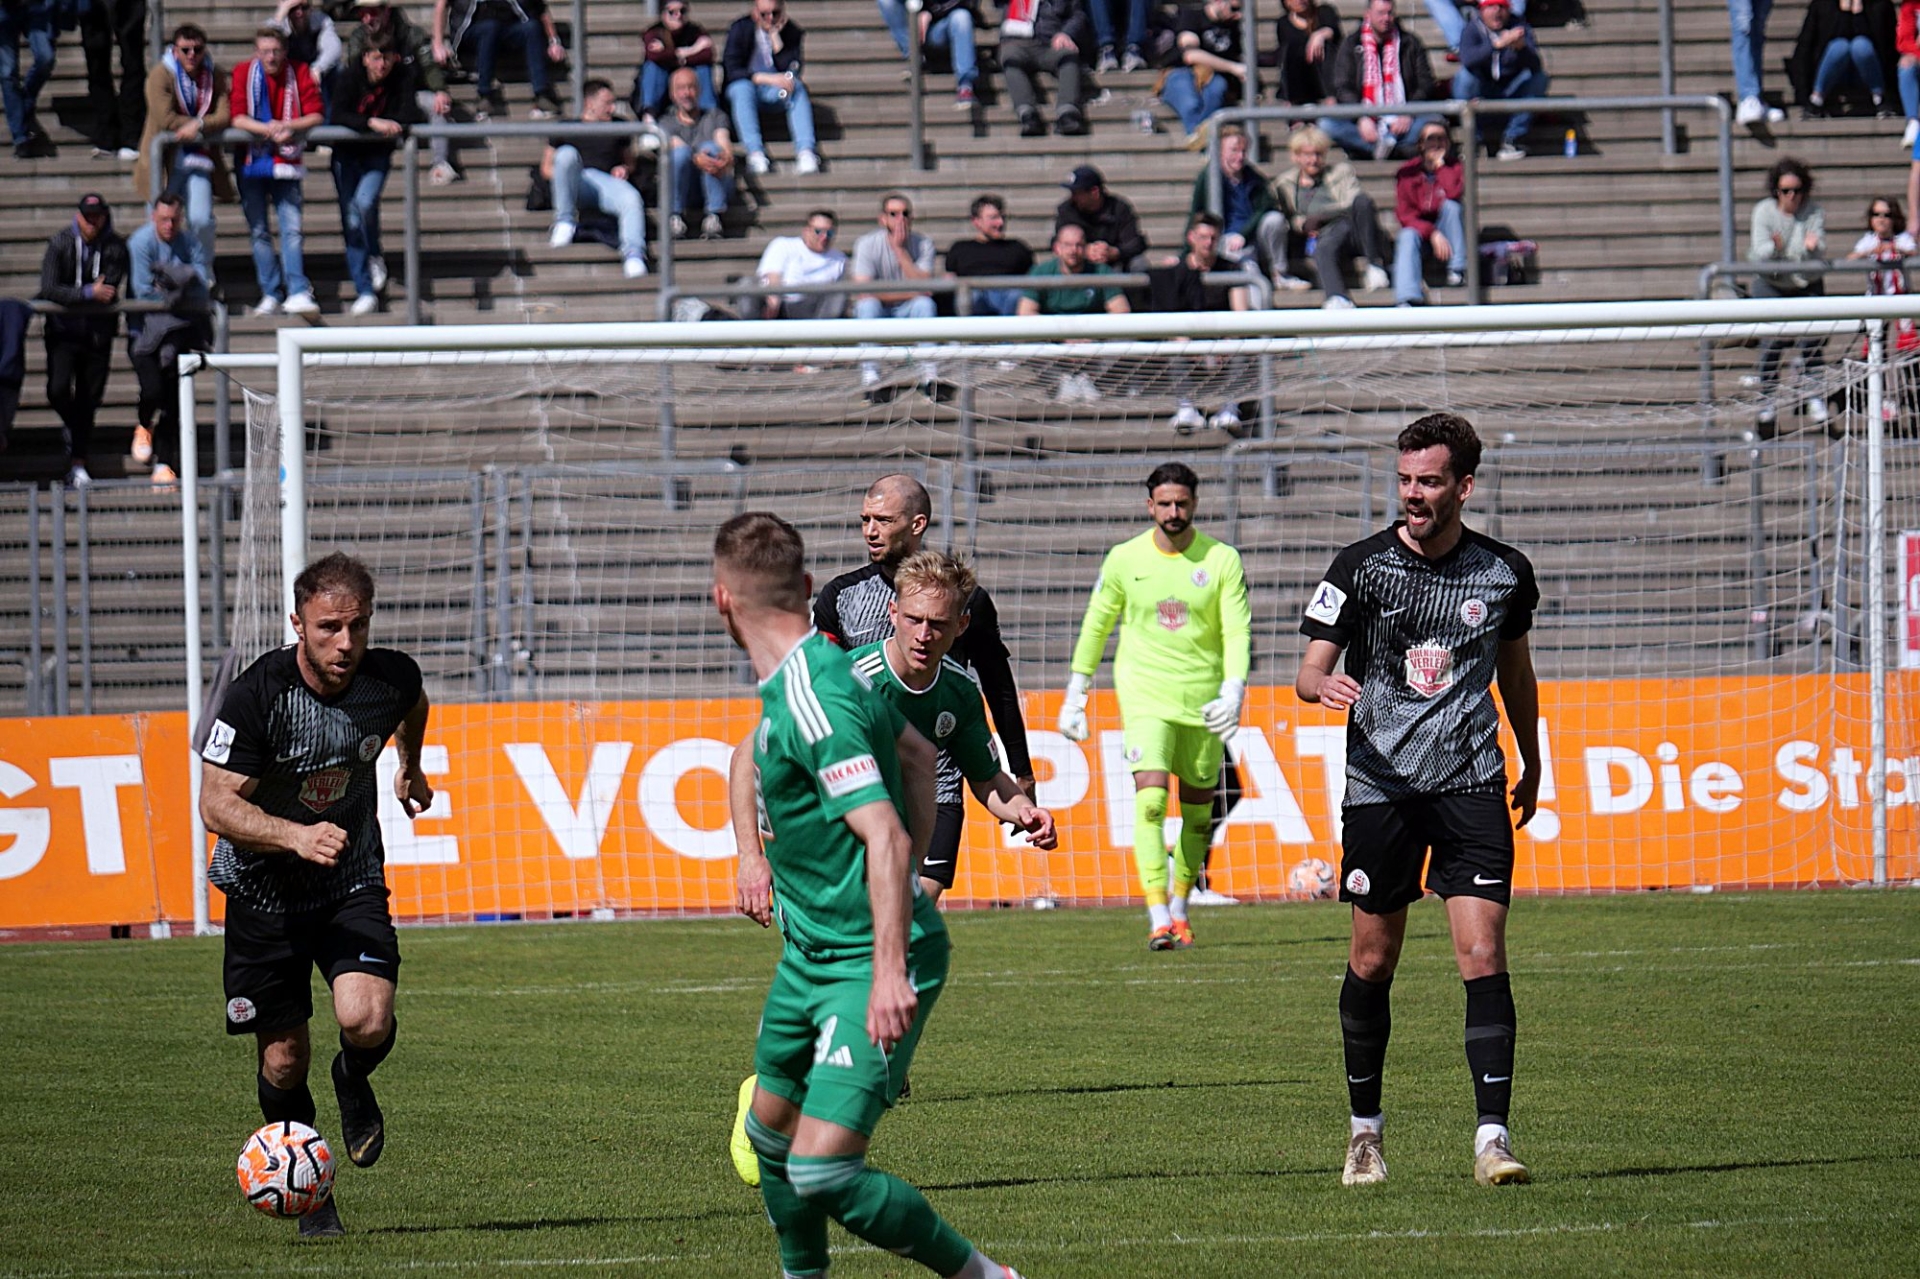 KSV Hessen Kassel - FC Homburg, Meha, Hingerl